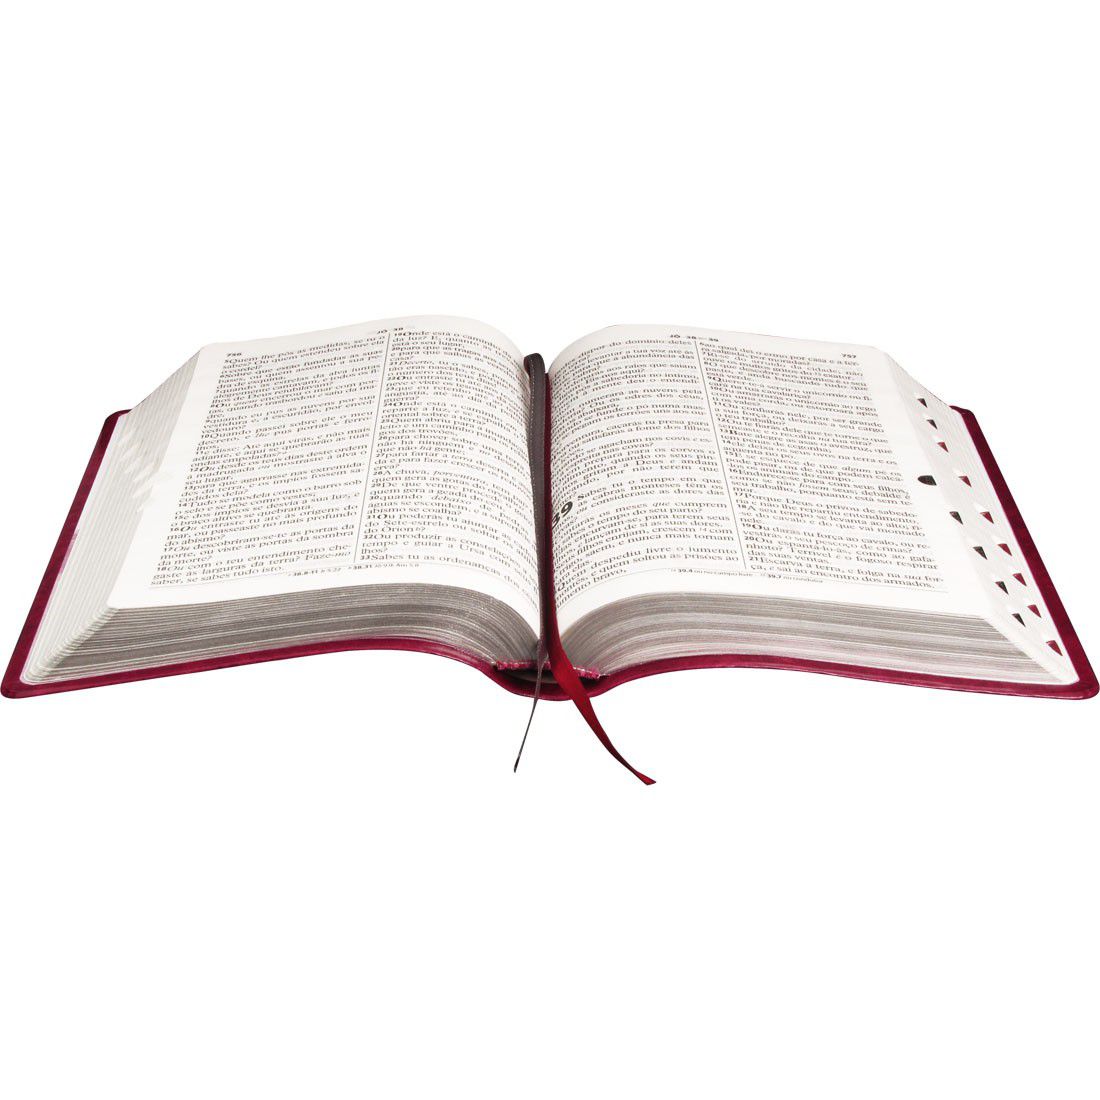 Bíblia Sagrada Letra Gigante - Capa Couro - Cor Púrpura Nobre Luxo